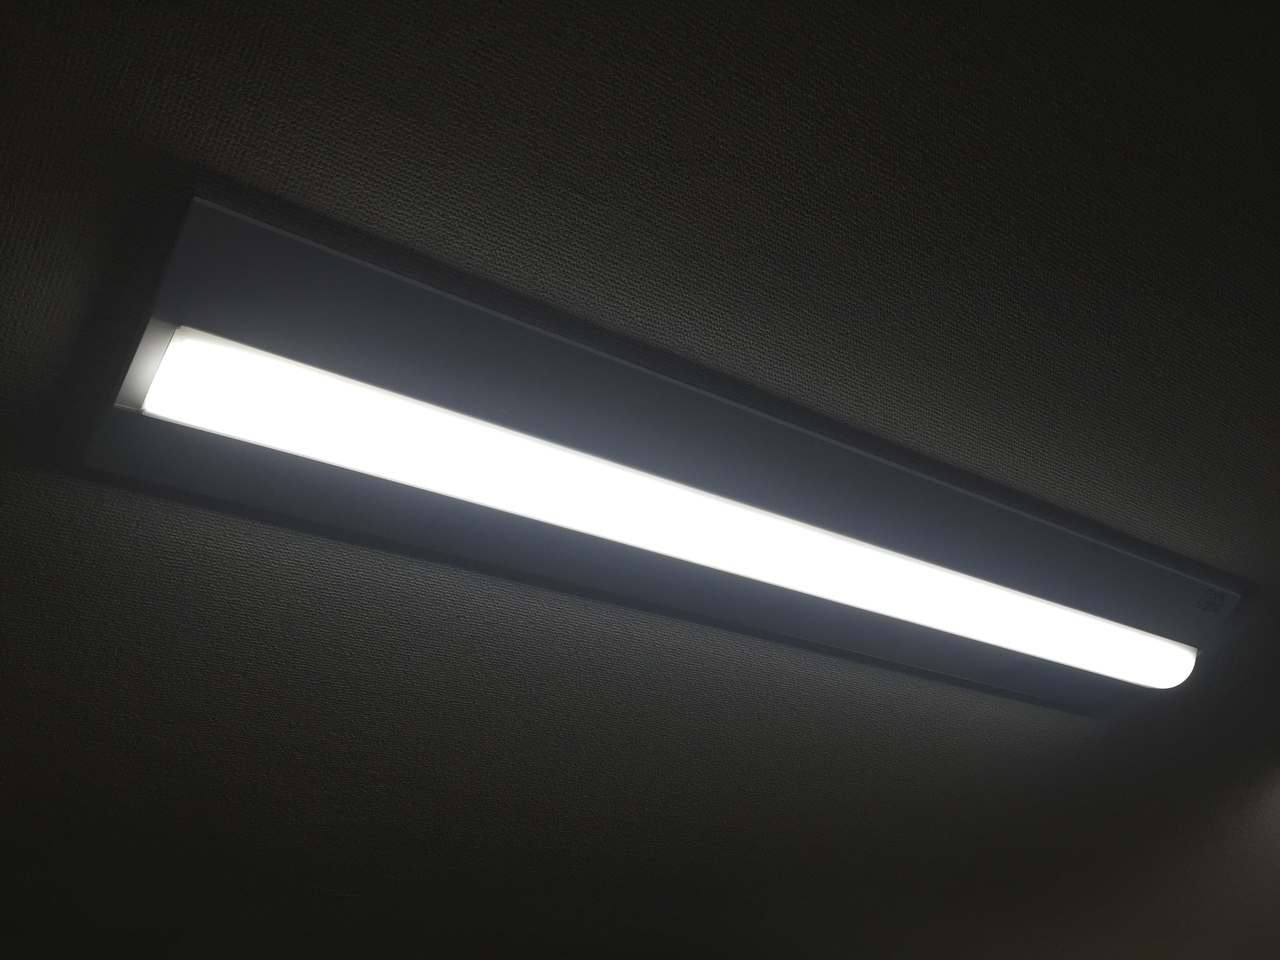 LED蛍光灯は消費電力が低い